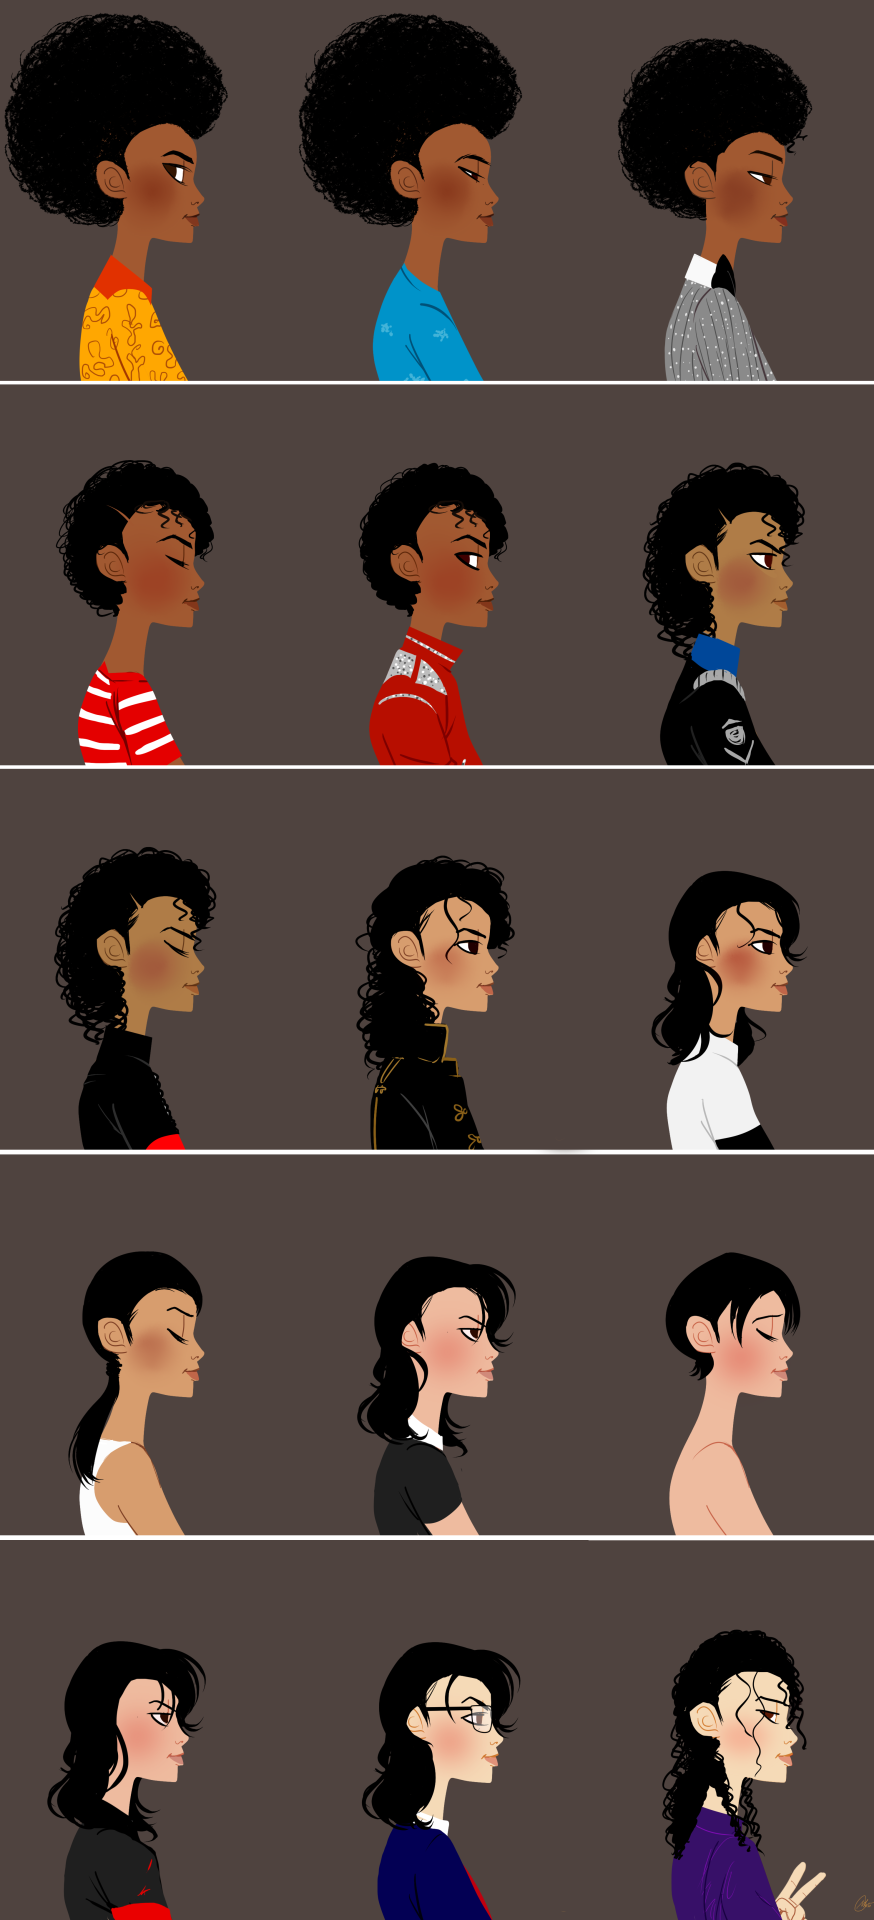 Fanart fan art Michael Jackson Thriller era Dangerous Era history era